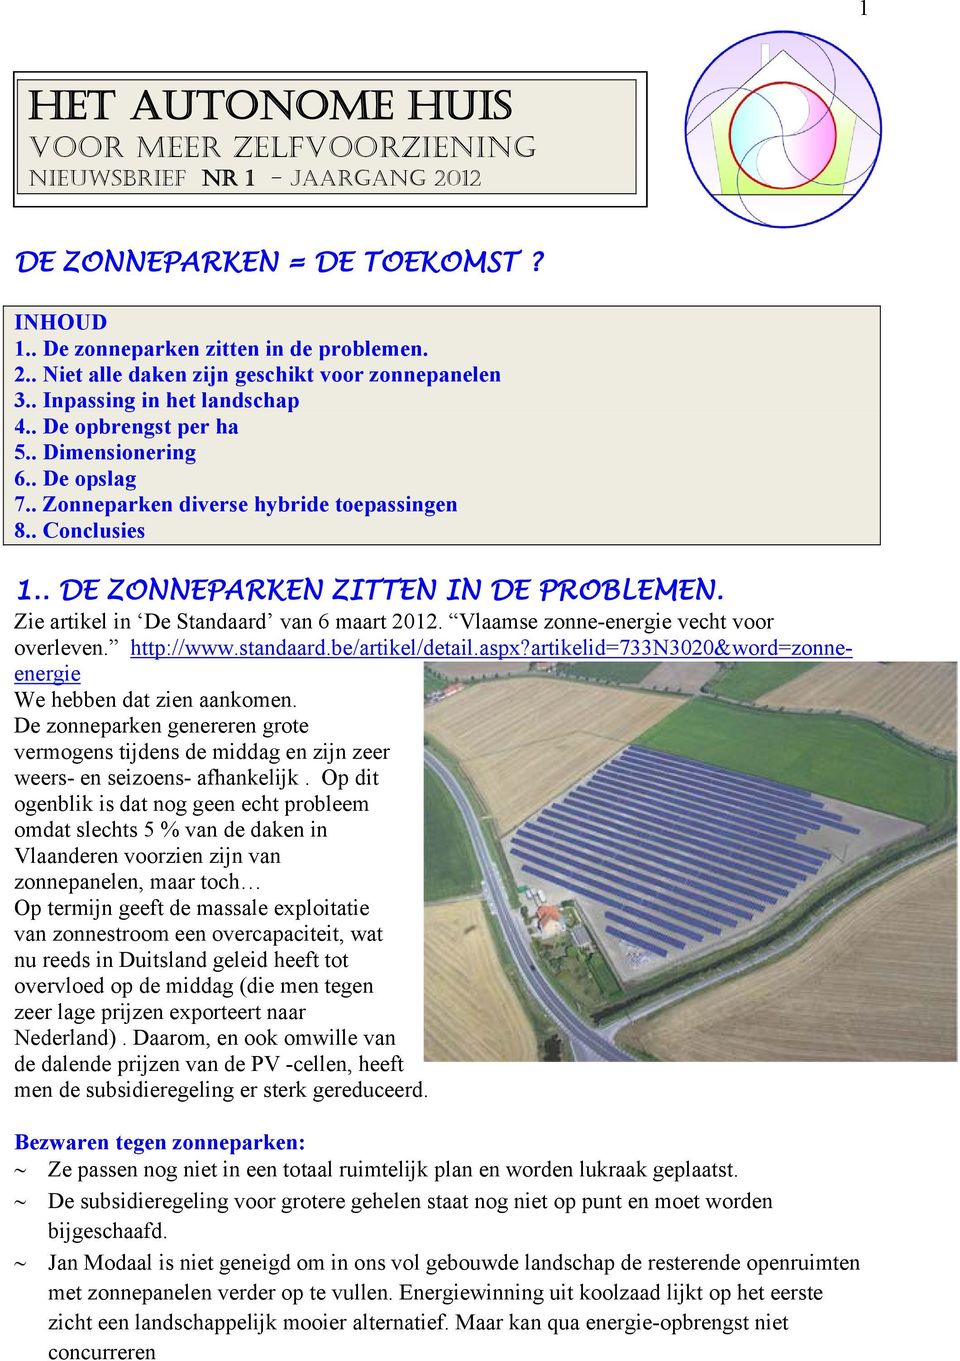 Zie artikel in De Standaard van 6 maart 2012. Vlaamse zonne-energie vecht voor overleven. http://www.standaard.be/artikel/detail.aspx?artikelid=733n3020&word=zonneenergie We hebben dat zien aankomen.